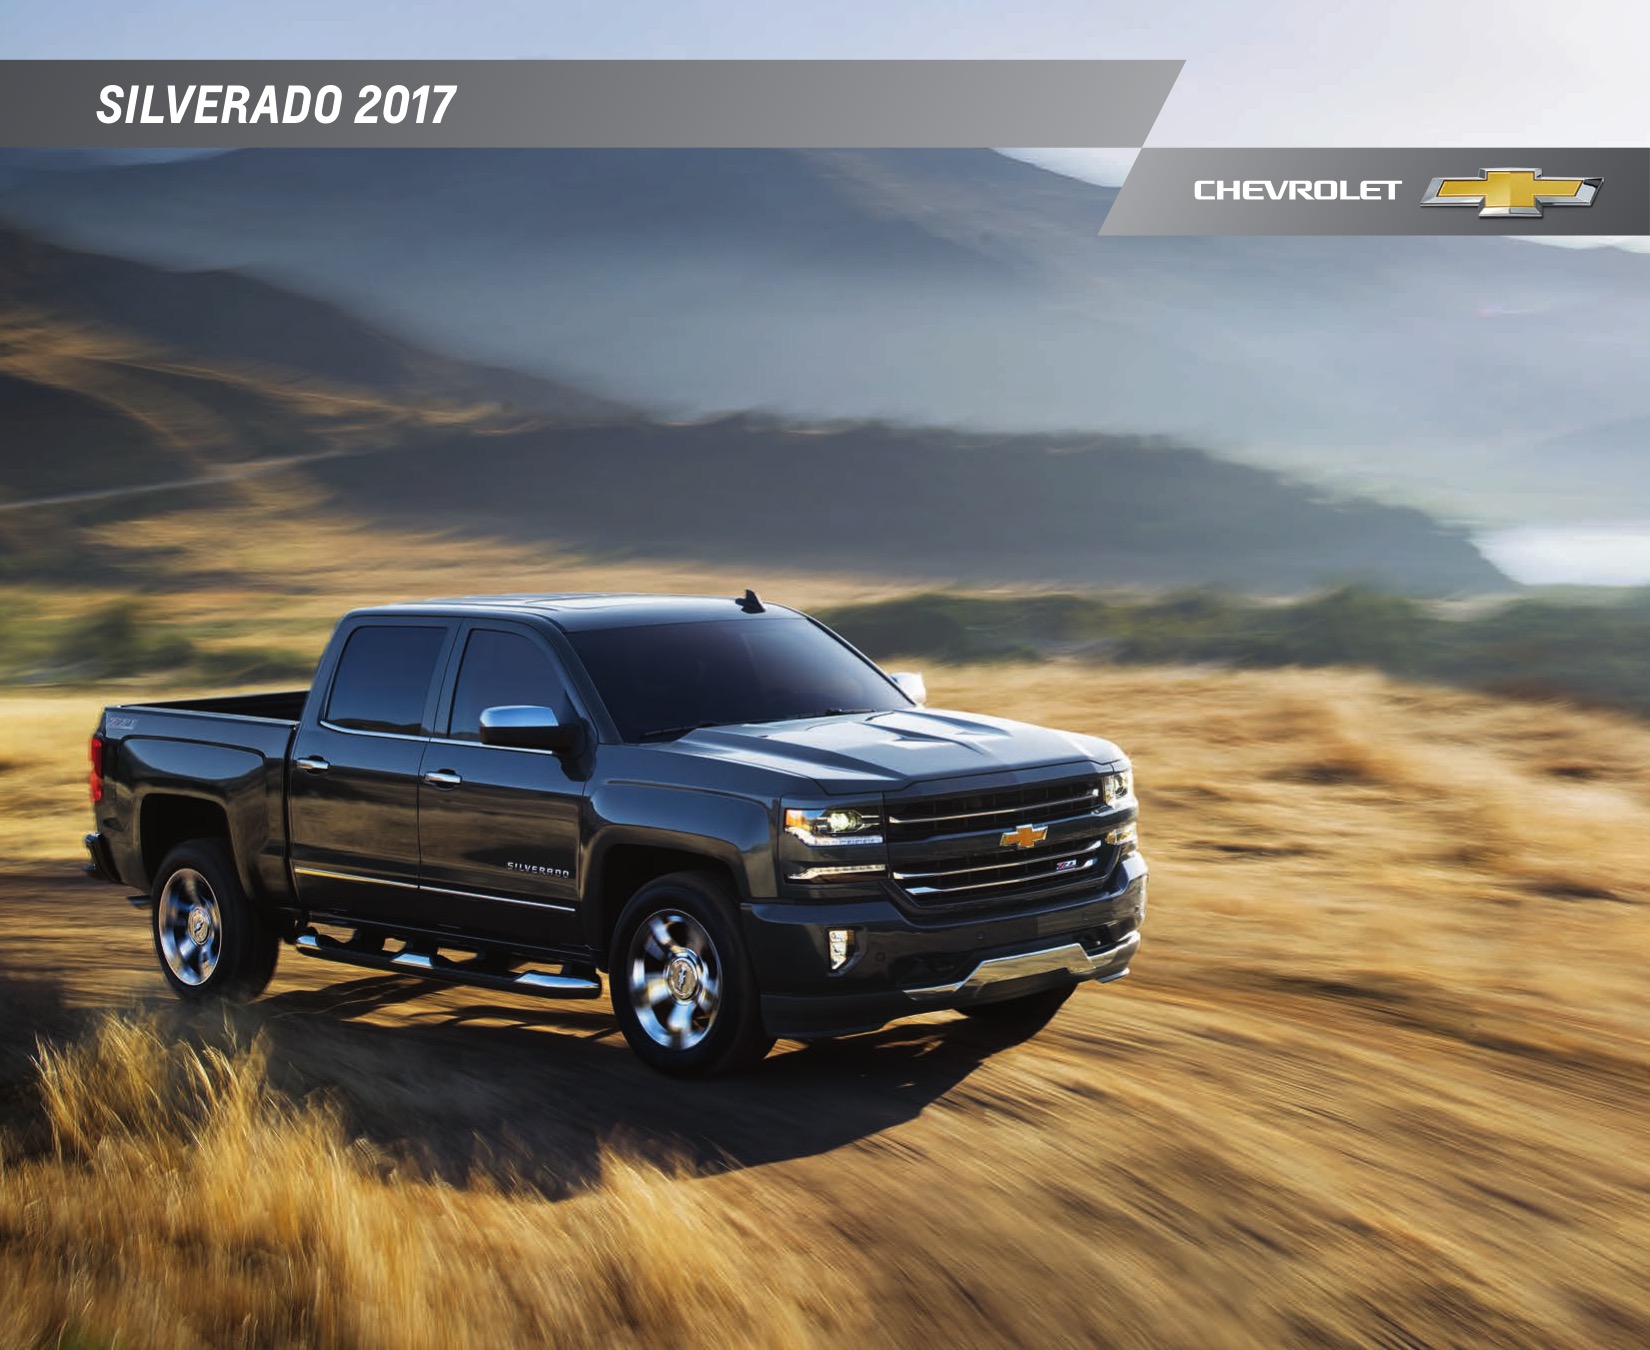 2017 Chevrolet Silverado Brochure